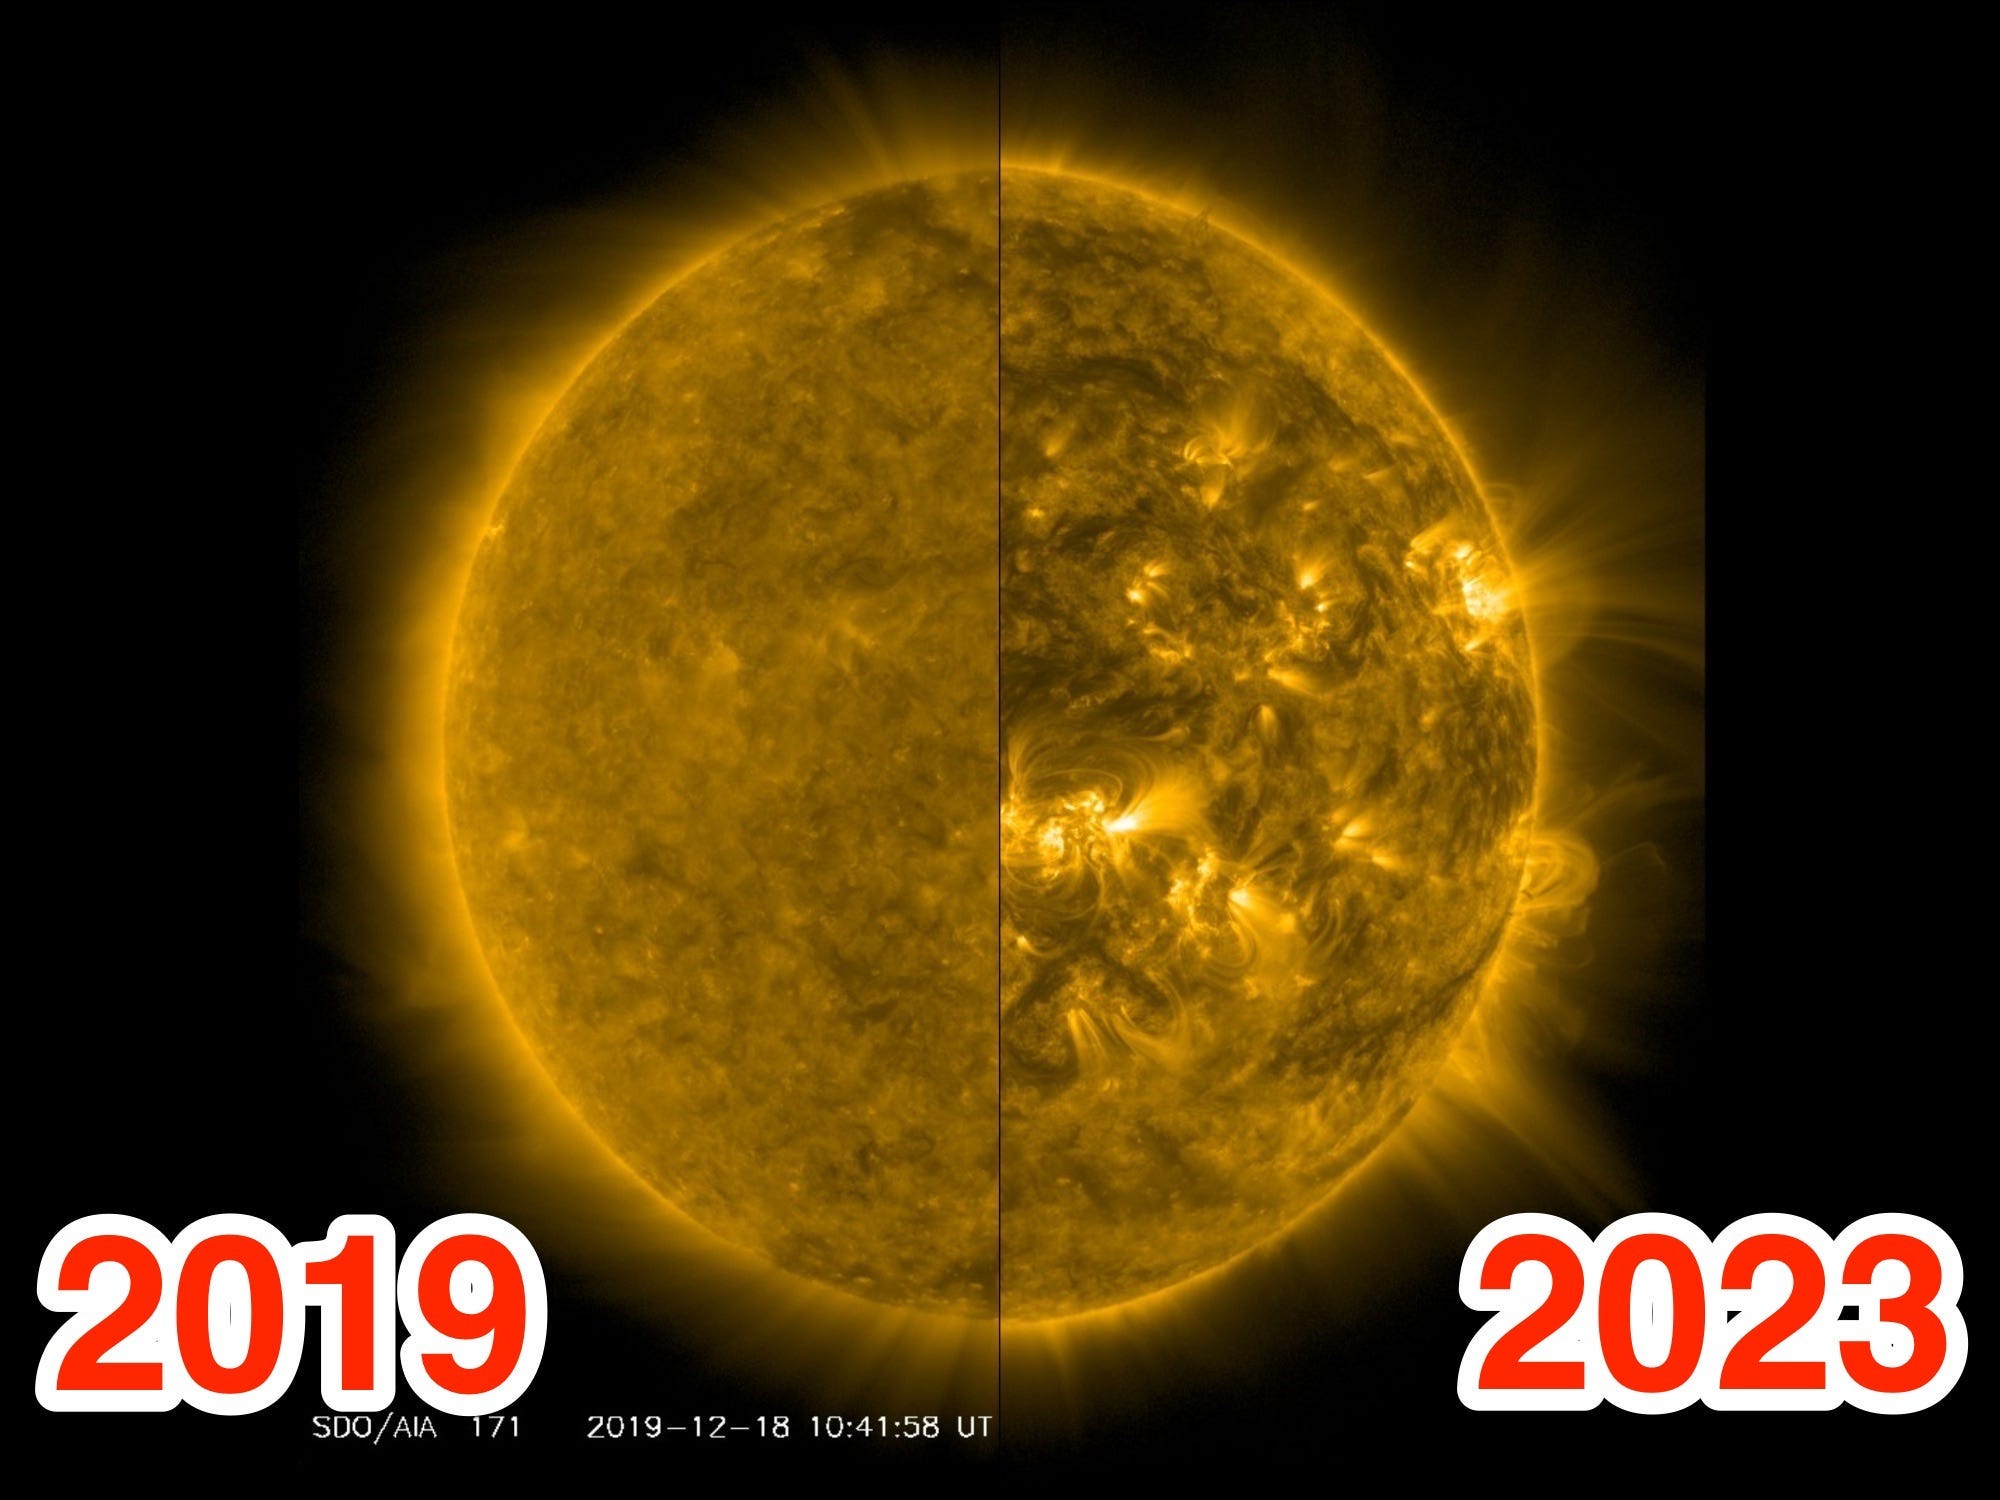 Nebeneinander gestellte, kommentierte Bilder zeigen die Sonne in den Jahren 2019 und 2023. Vor 4 Jahren sah die Sonne viel ruhiger aus, jetzt platzt sie vor Eruptionen und Unruhen.